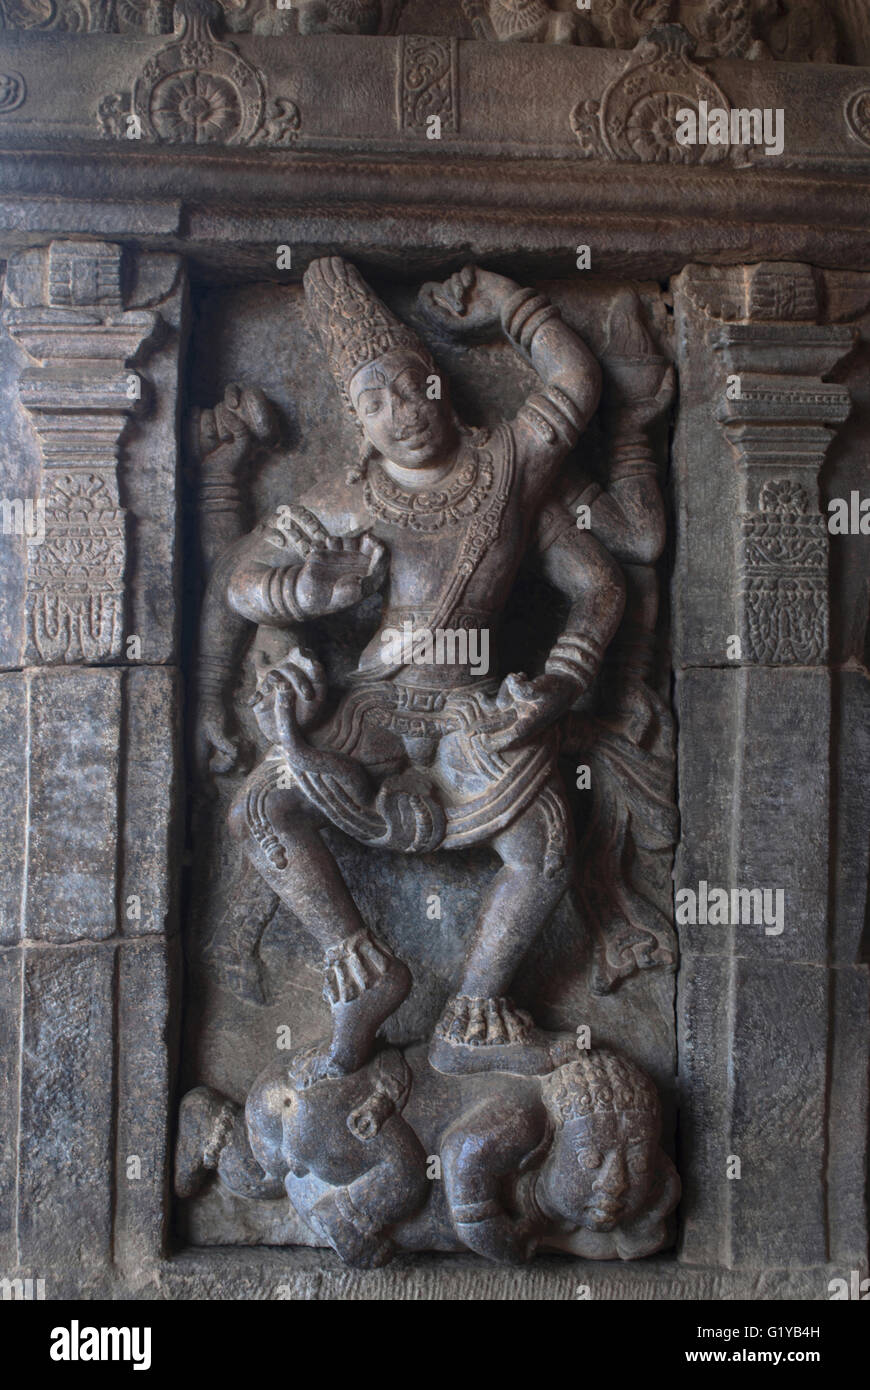 Shiva dansant sur apasmara, la mort. Créneau sur le côté droit, dans le nord de mukha mandapa, temple de Virupaksha, Pattadakal, Karnataka, Inde Banque D'Images